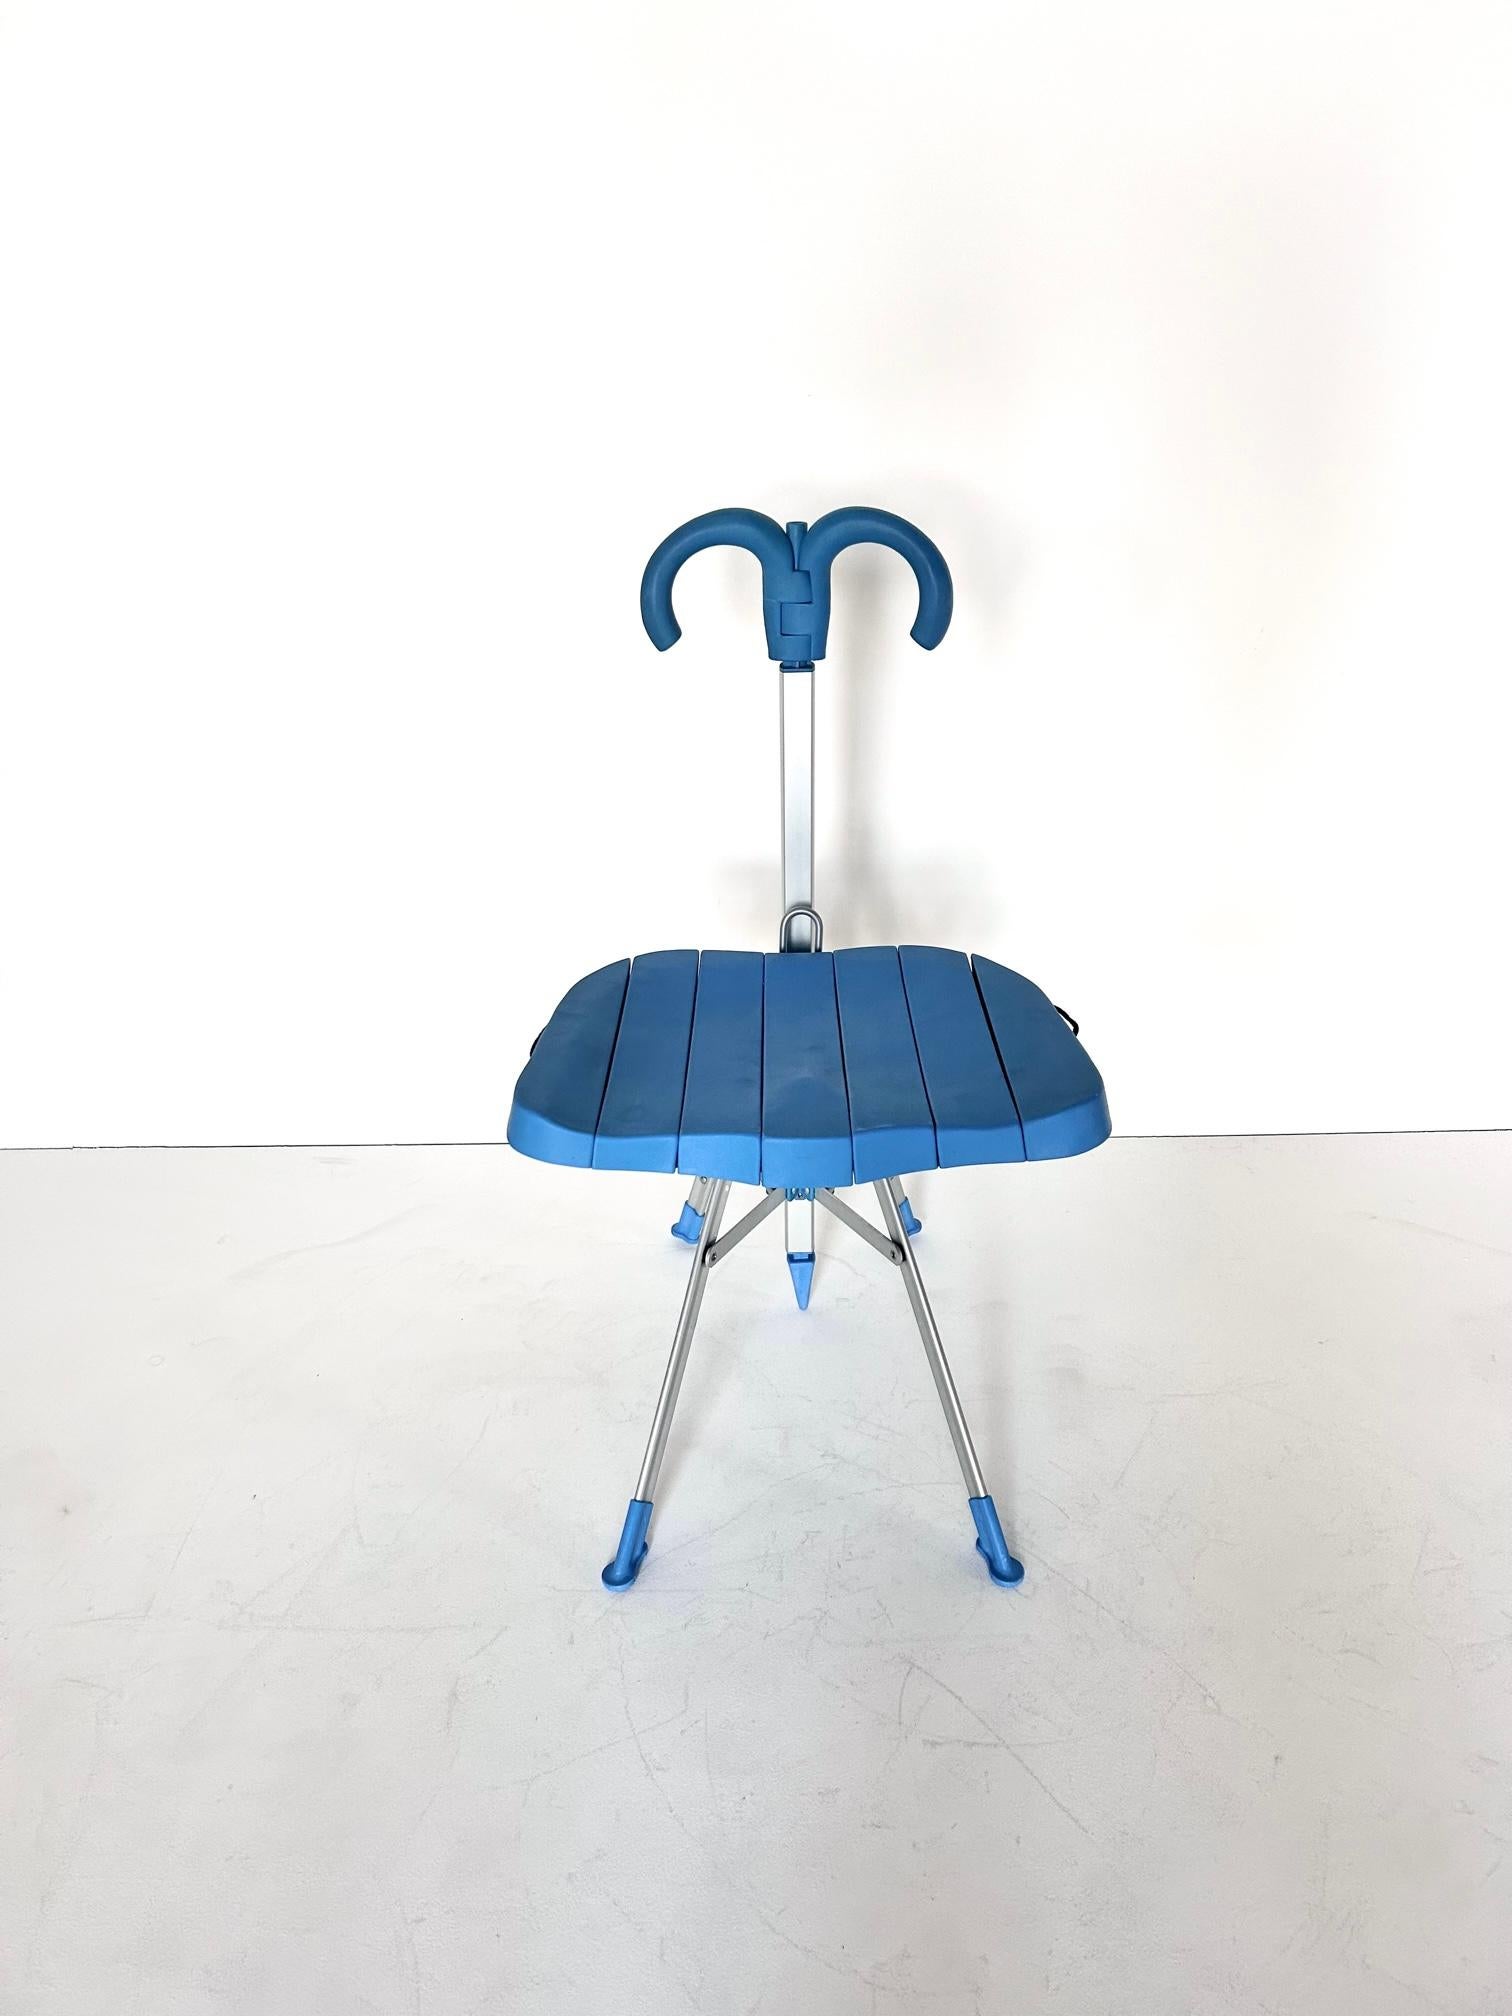 Metal Umbrella chair, Gaetano Pesce, Zerodisegno, 1995's For Sale